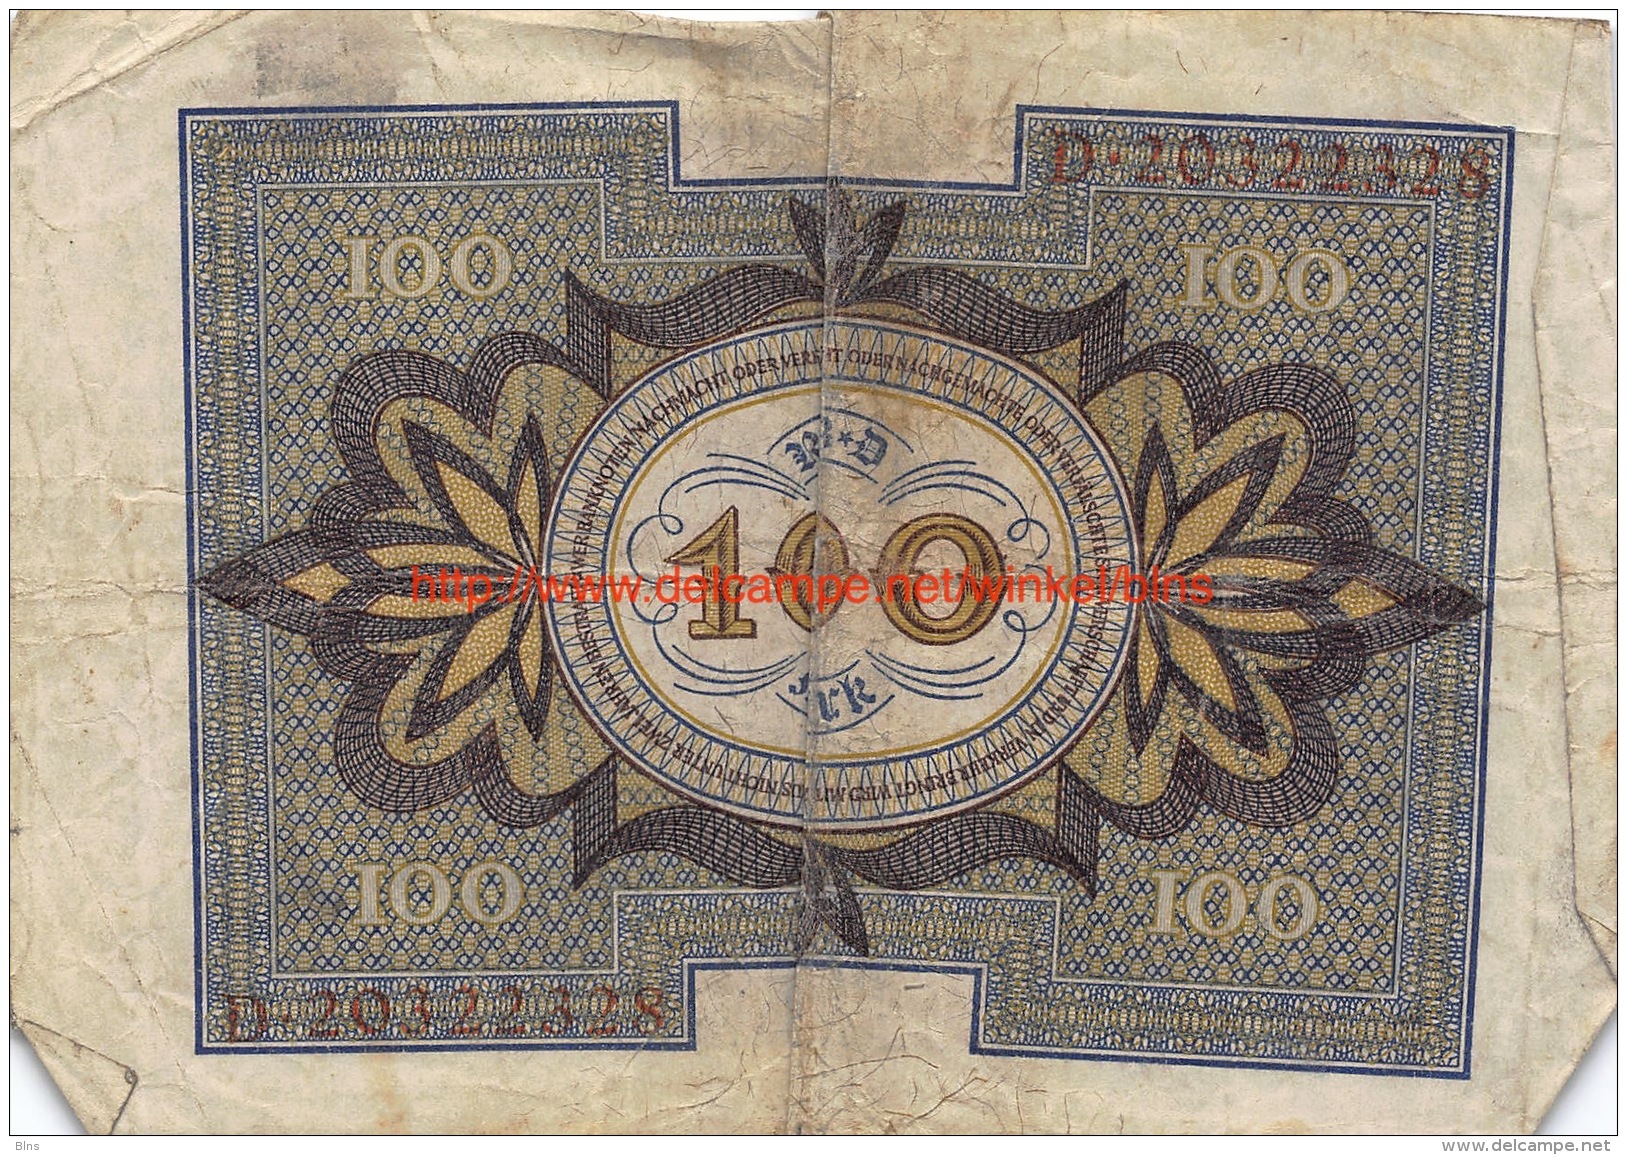 Hundert Mark 100 Reichsbanknote 1920 - 100 Mark